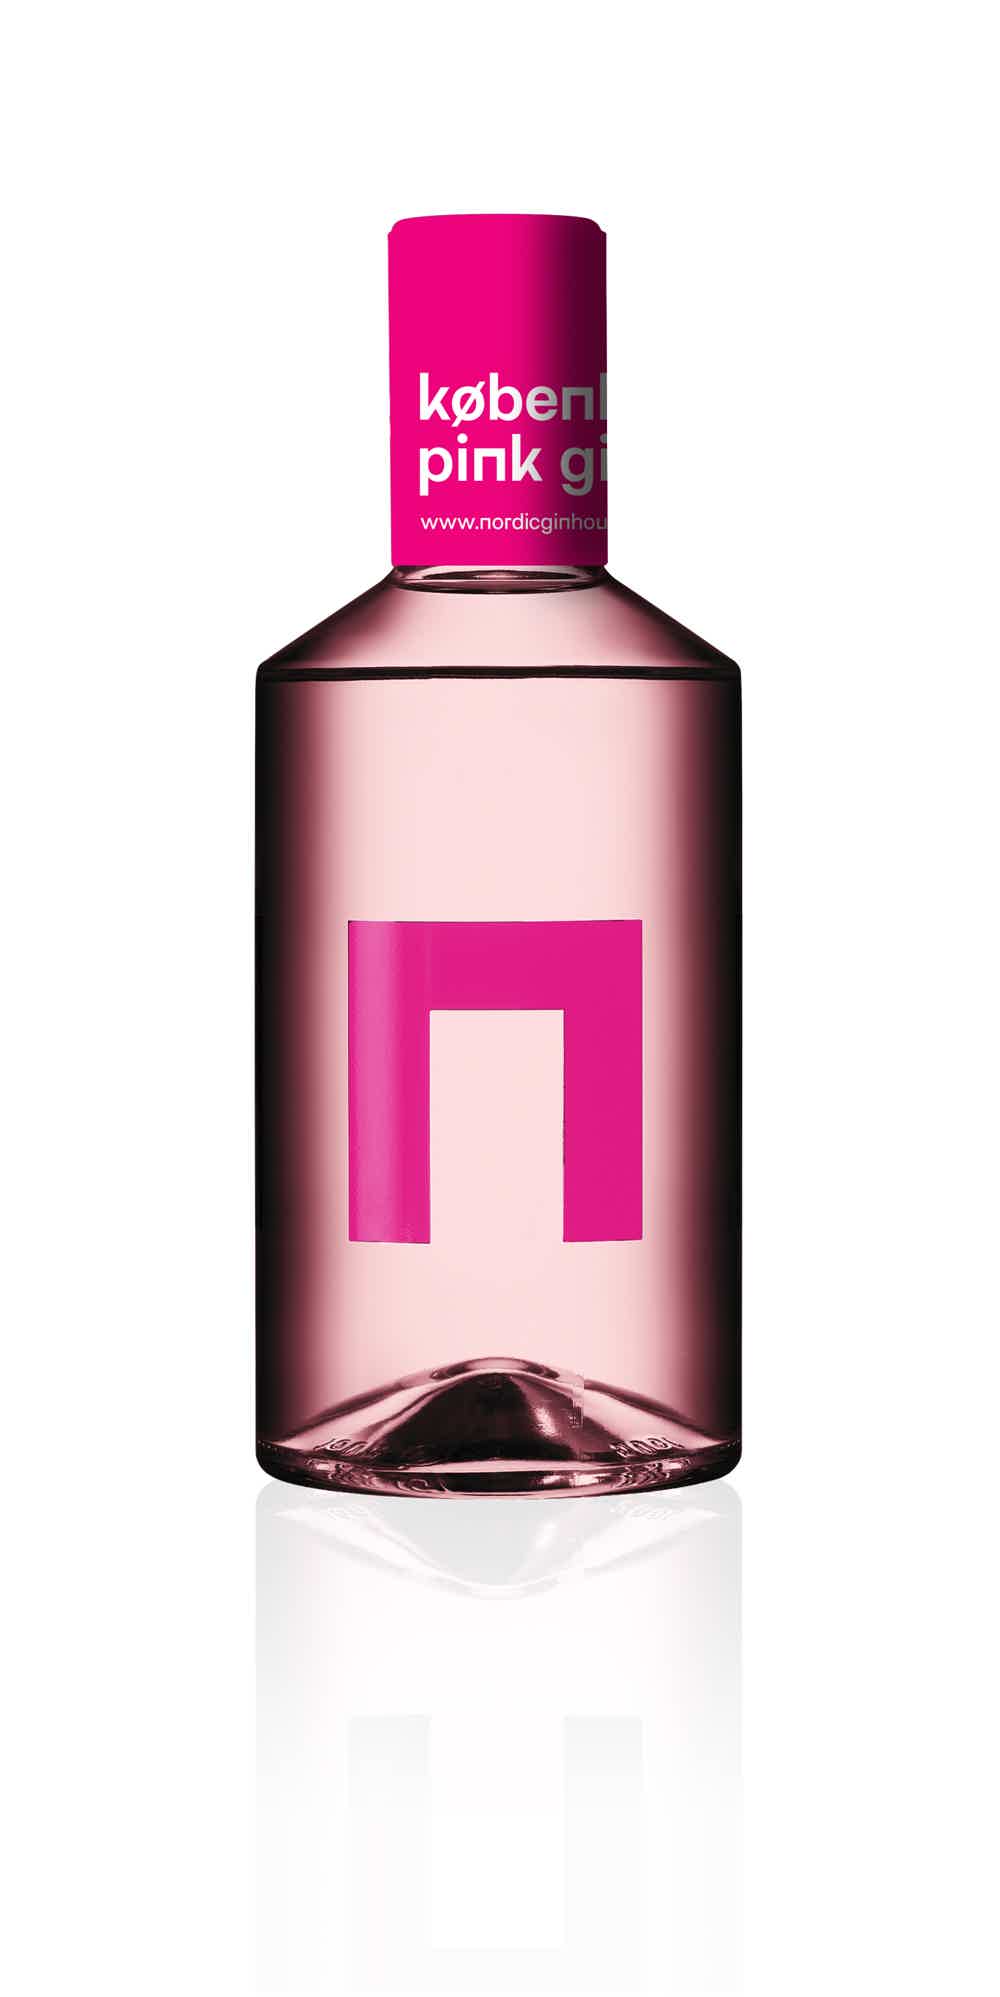 København Klassisk Pink Gin 37.5% 0.5L, Spirits